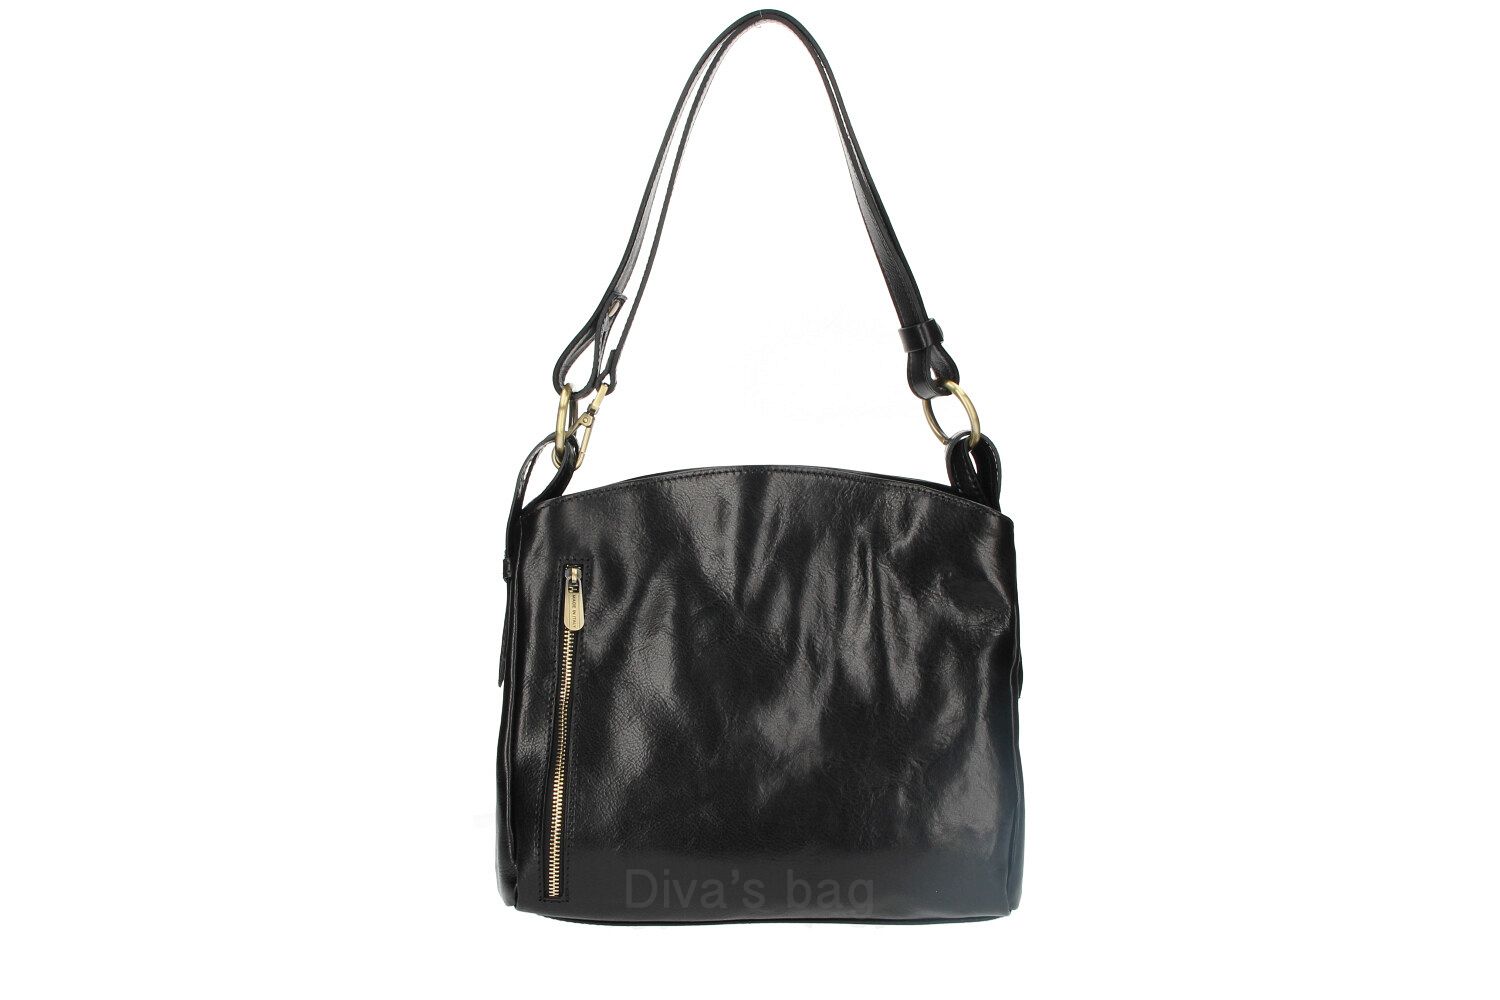 Graziella - Genuine Leather Shoulderbag